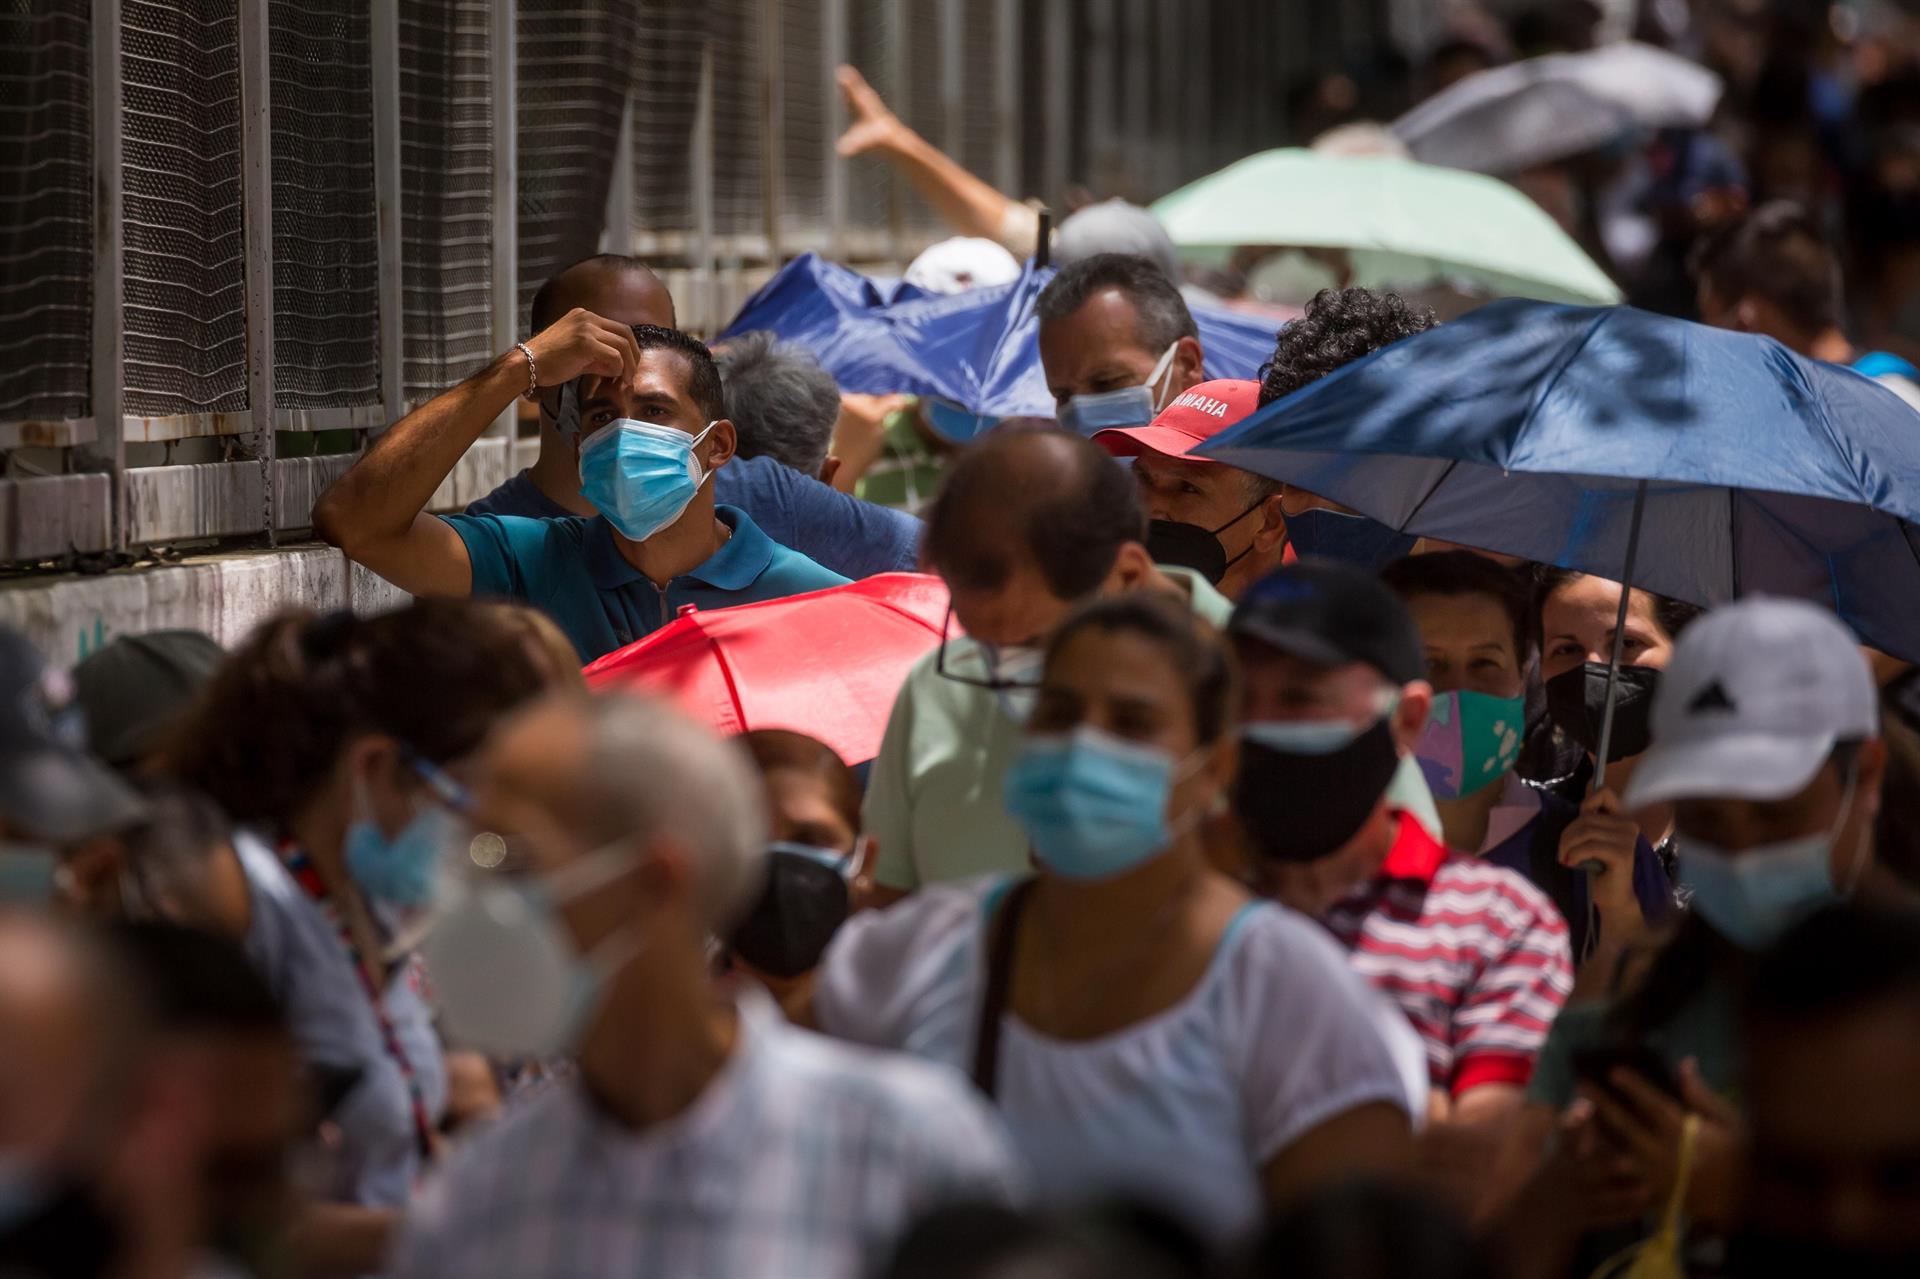 El venezolano no está preparado psicológicamente para volver a la normalidad, asegura experto